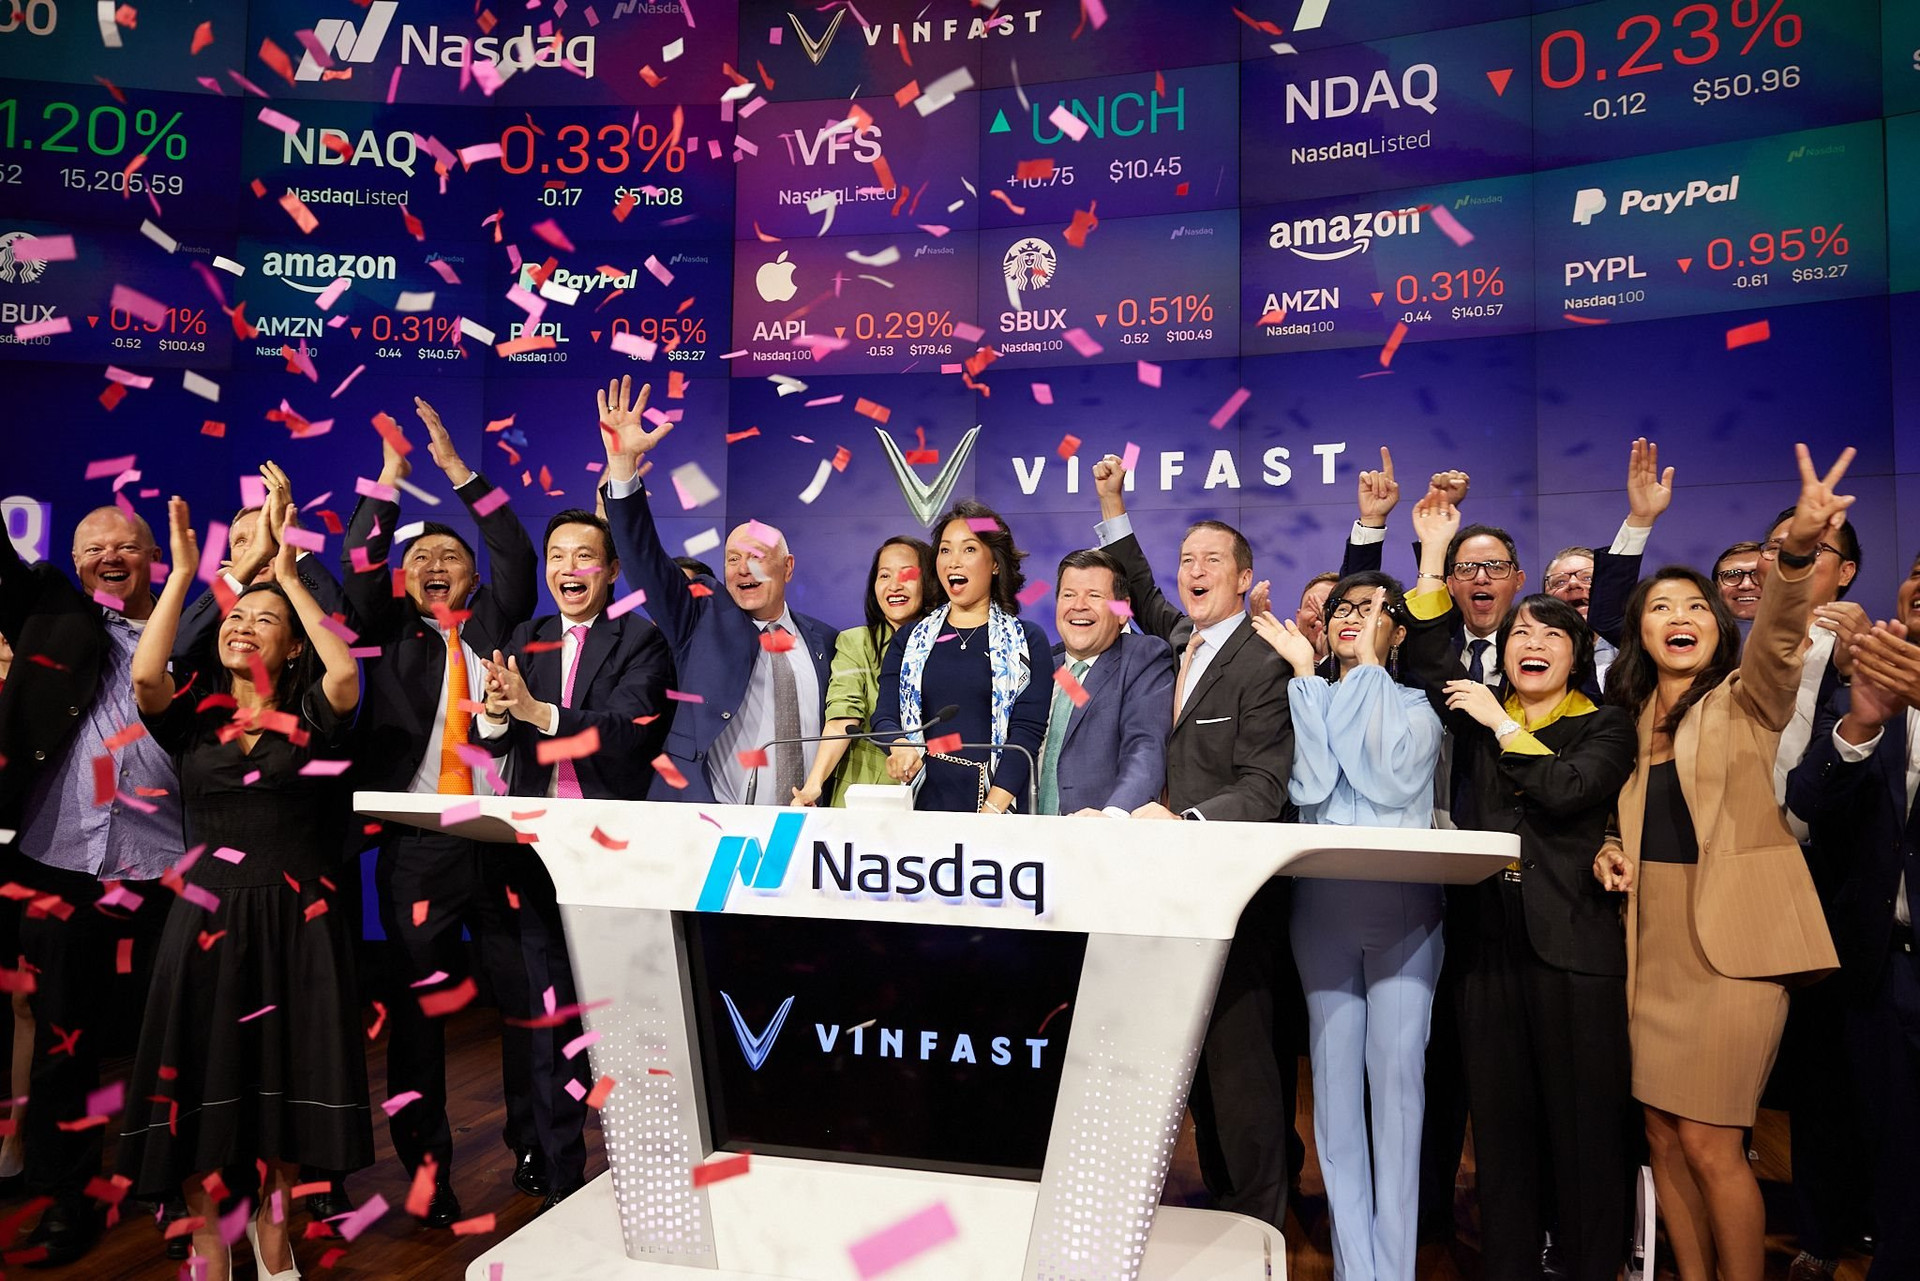 Vinfast chính thức IPO treensanf NASDAQ